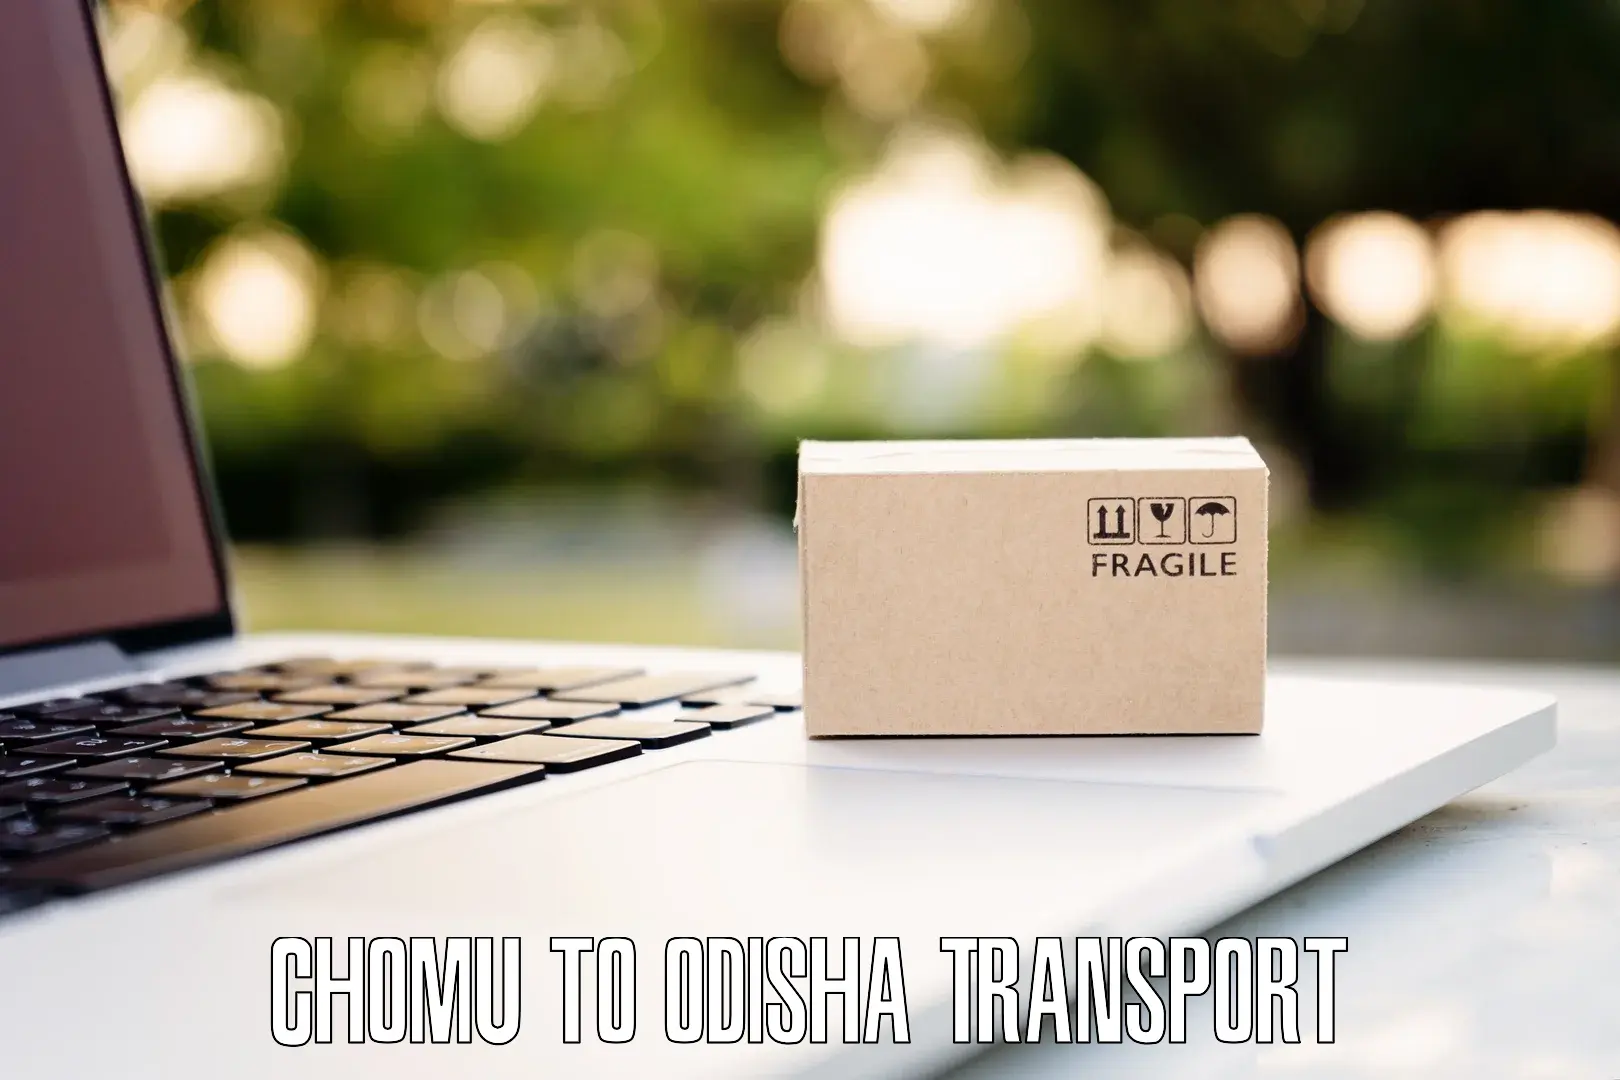 Daily parcel service transport Chomu to Basta